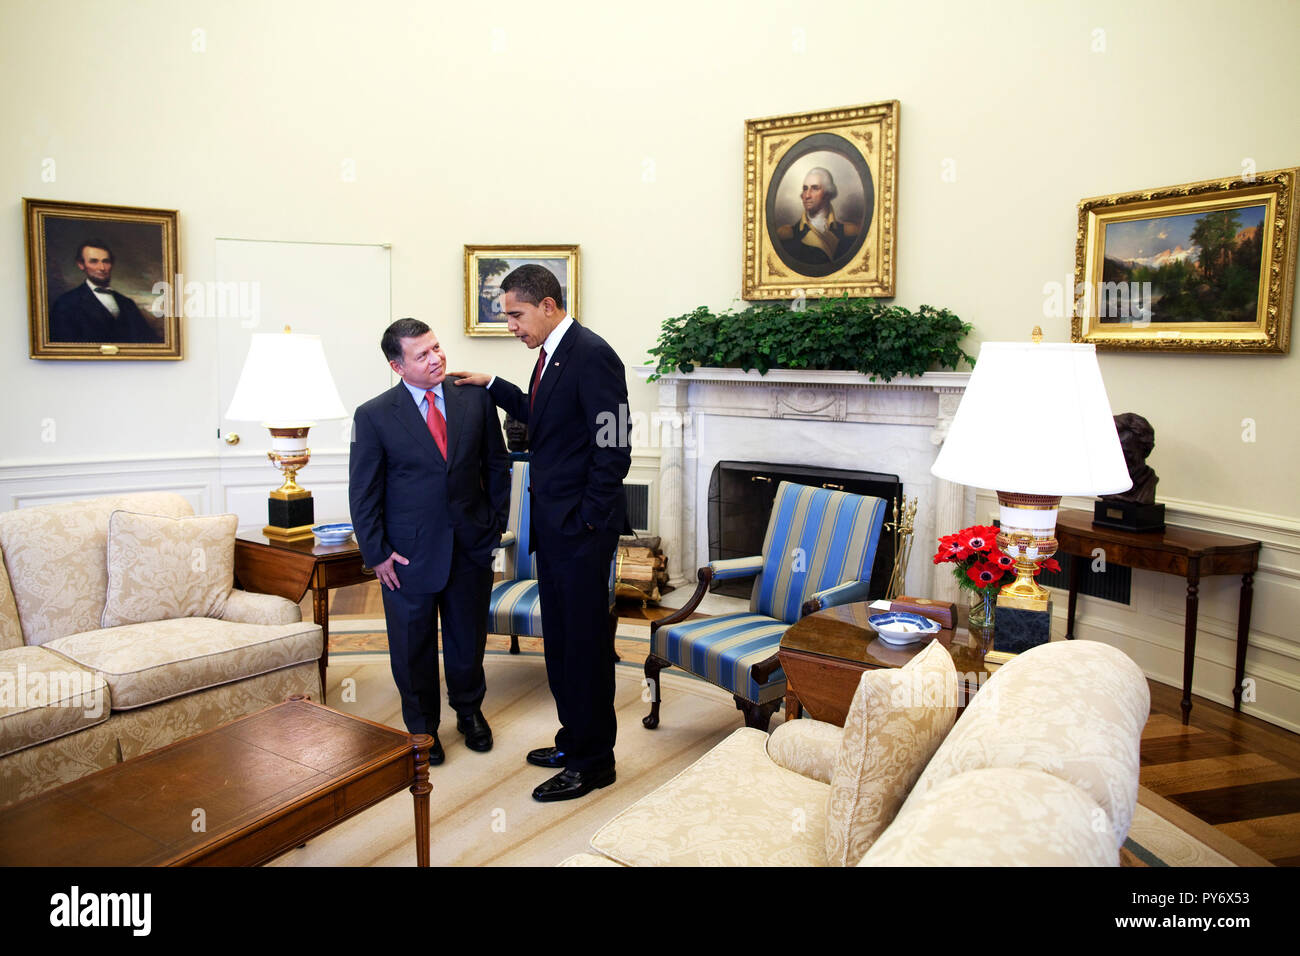 Le président Barack Obama rencontre le roi Abdallah de Jordanie dans le bureau ovale 4/21/09 Photo Officiel de la Maison Blanche par Pete Souza Banque D'Images